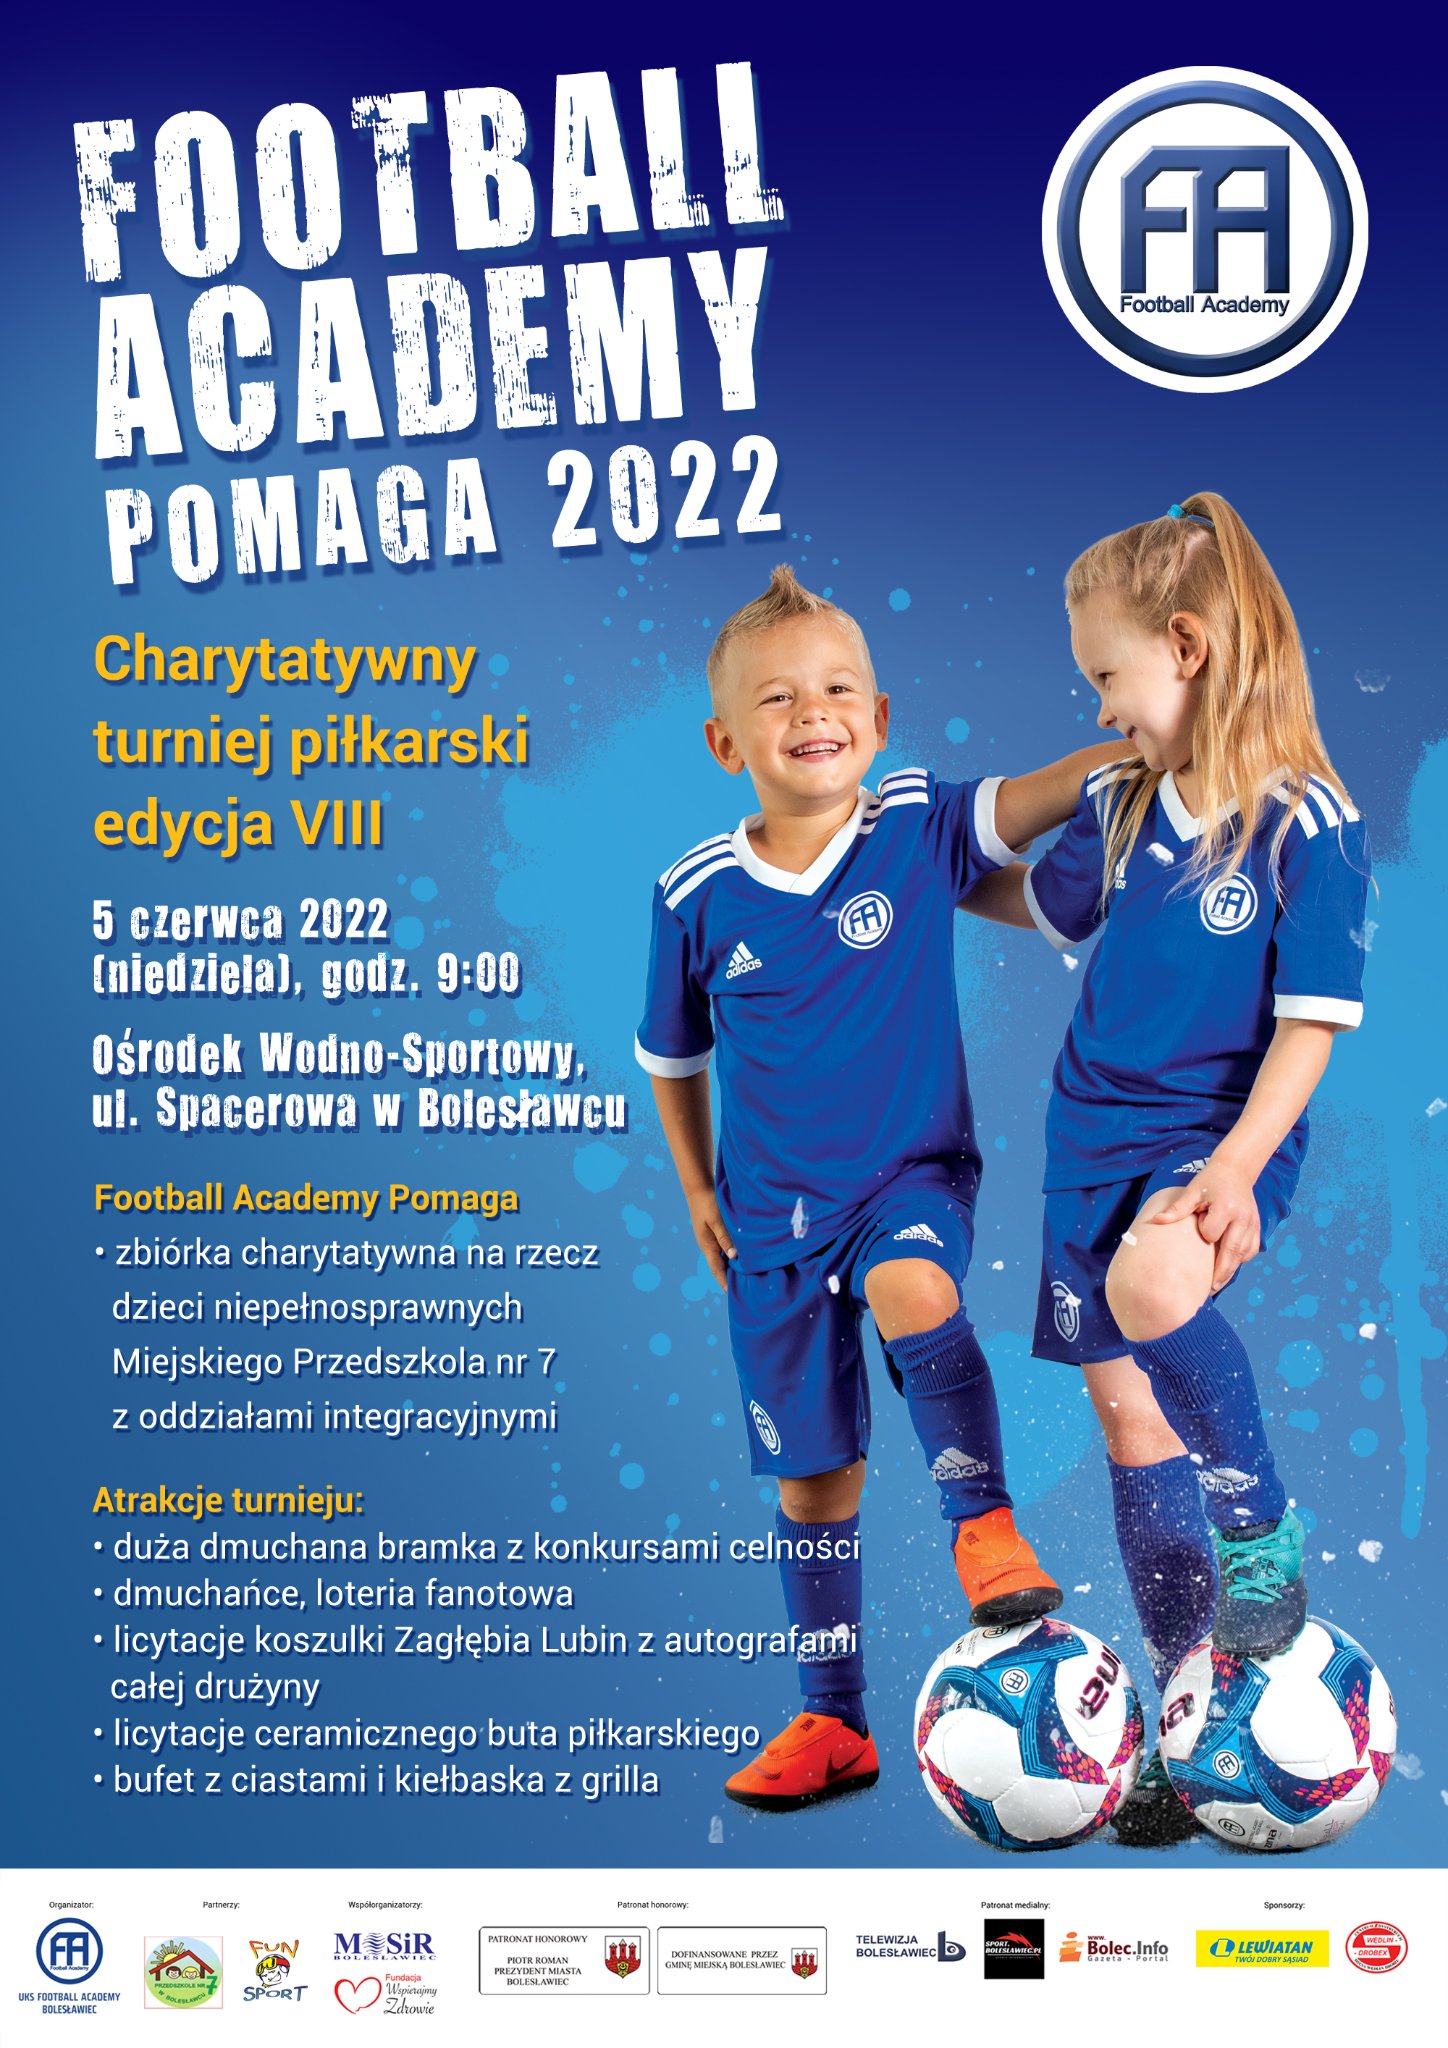 Football Academy Pomaga 2022